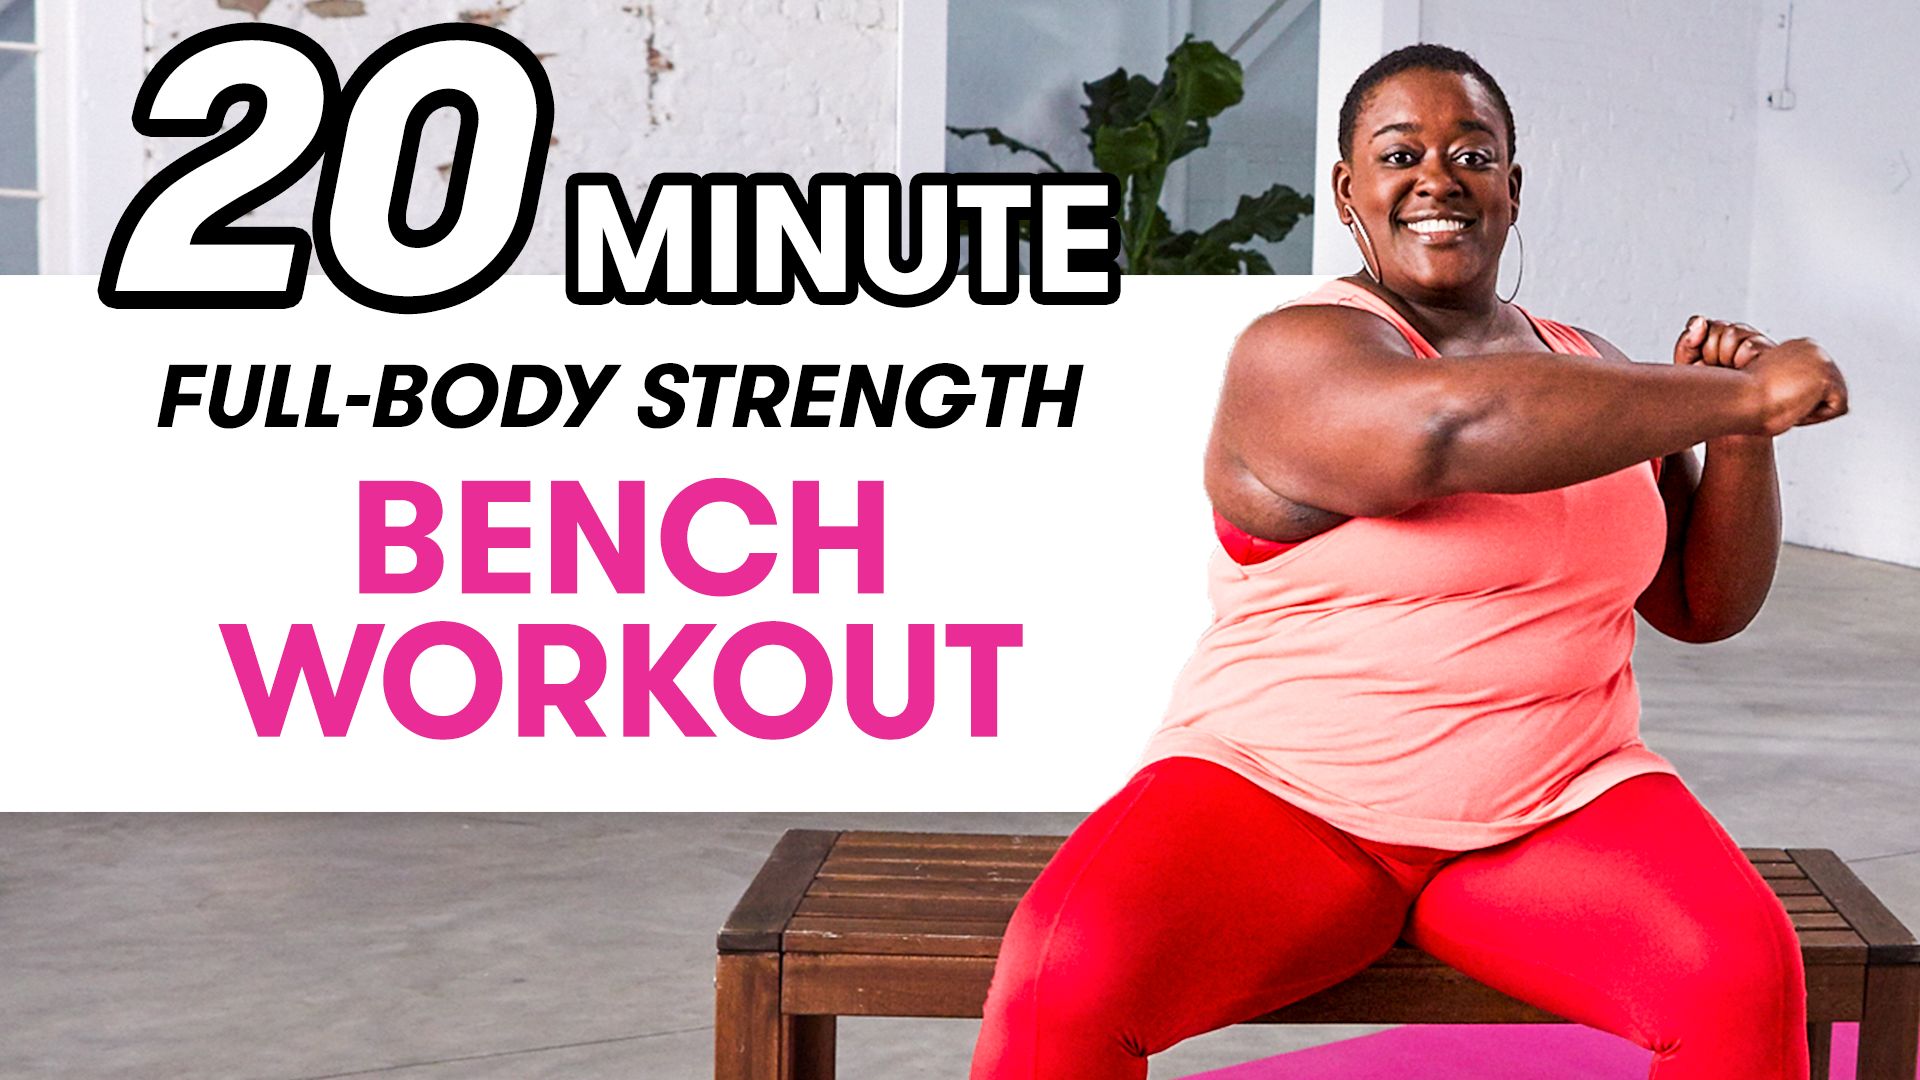 Strength Training Exercises For Women: A 20-Minute Full-Body